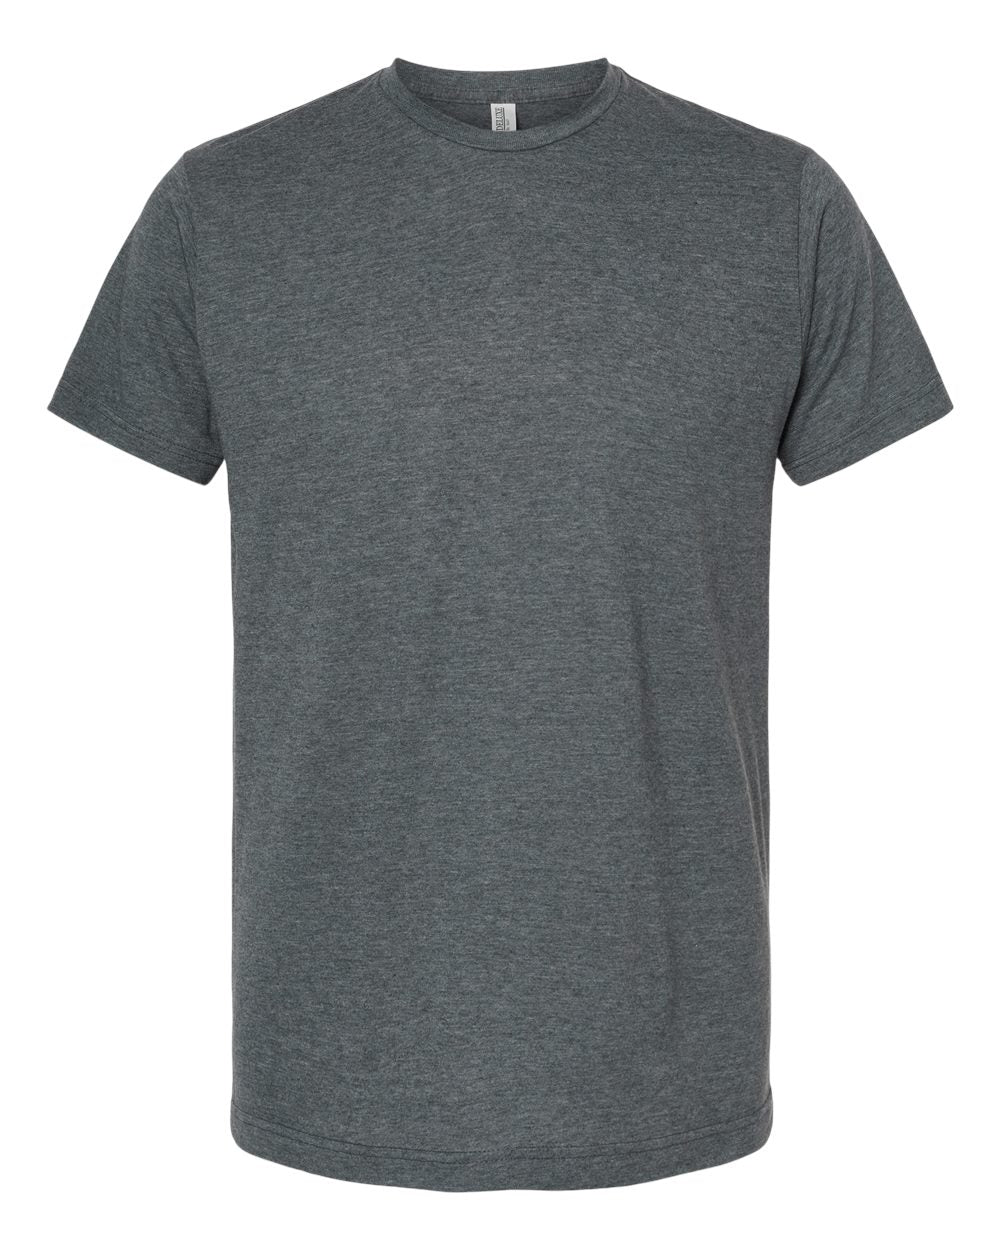 Premium Adult Tee — Design Your Own Crew Neck T-Shirt  Unisex